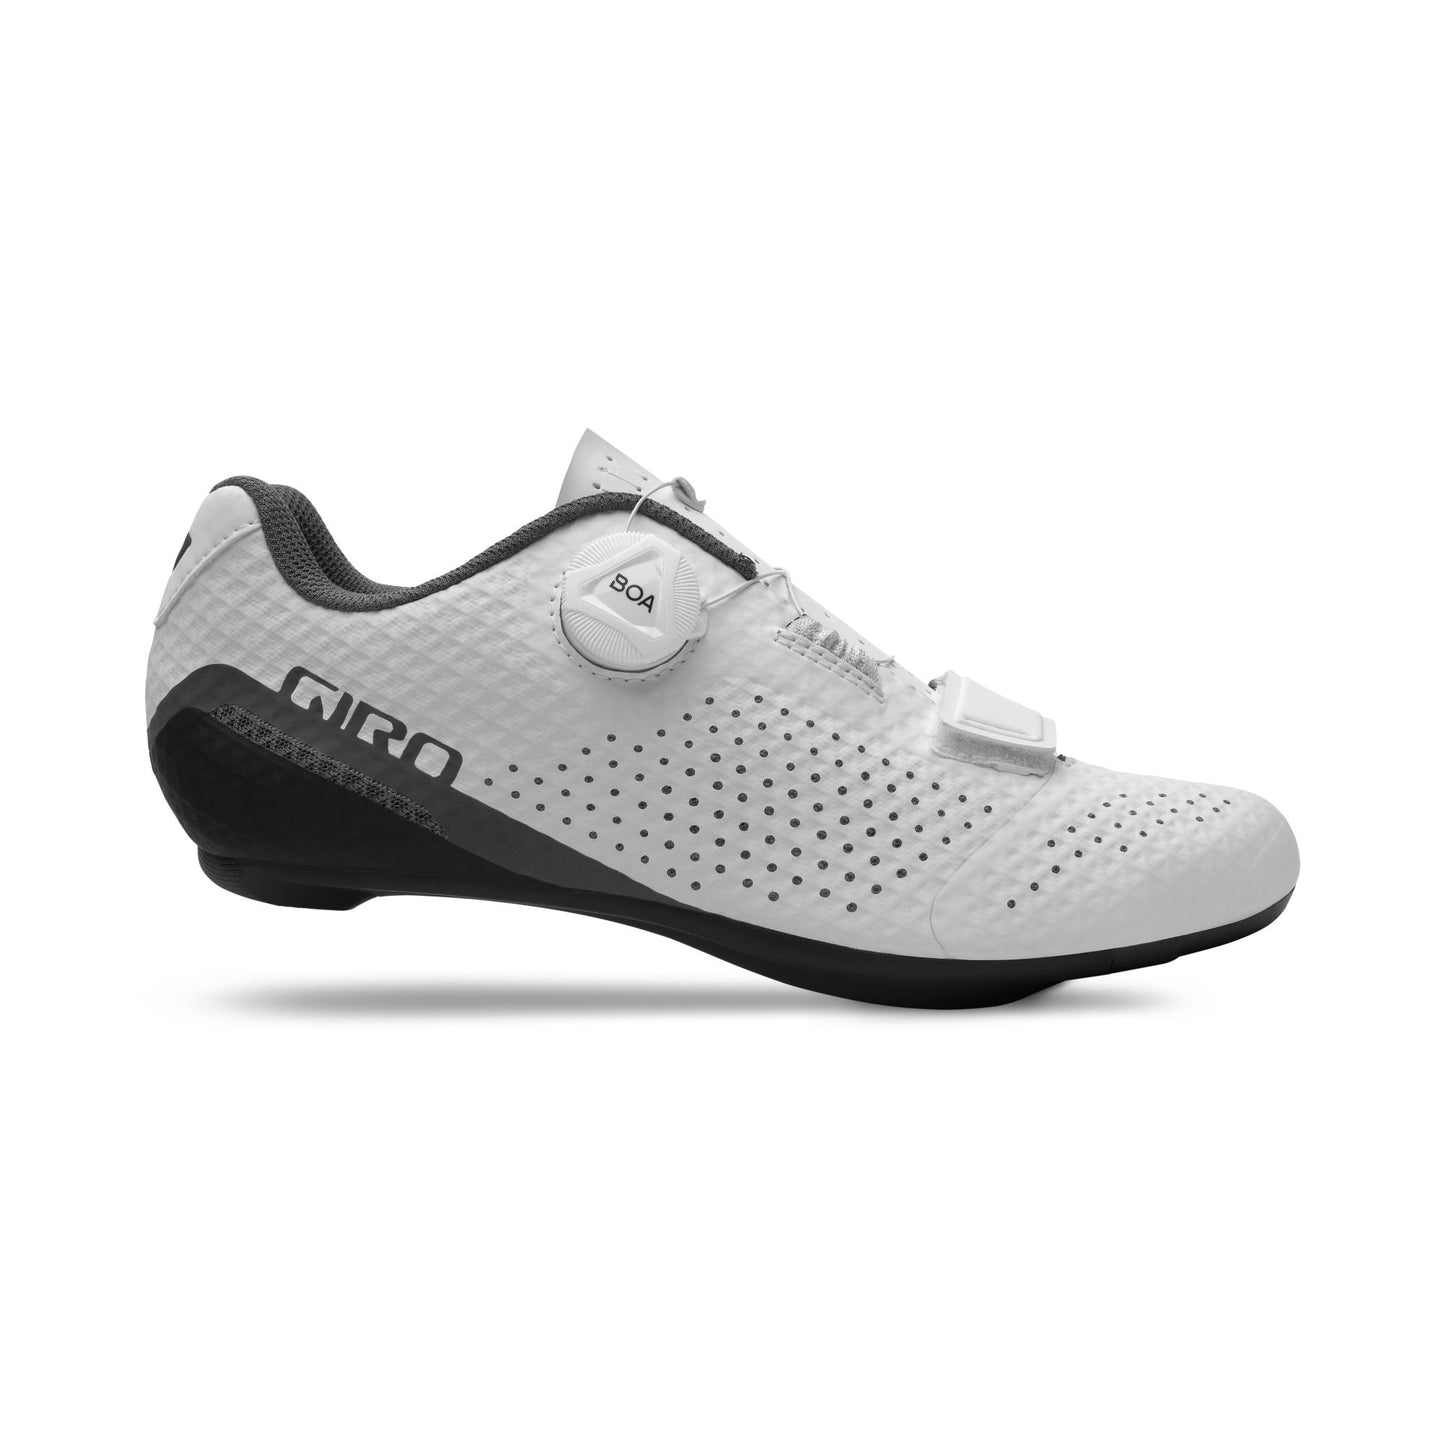 Giro Women's Cadet Shoe White Bike Shoes